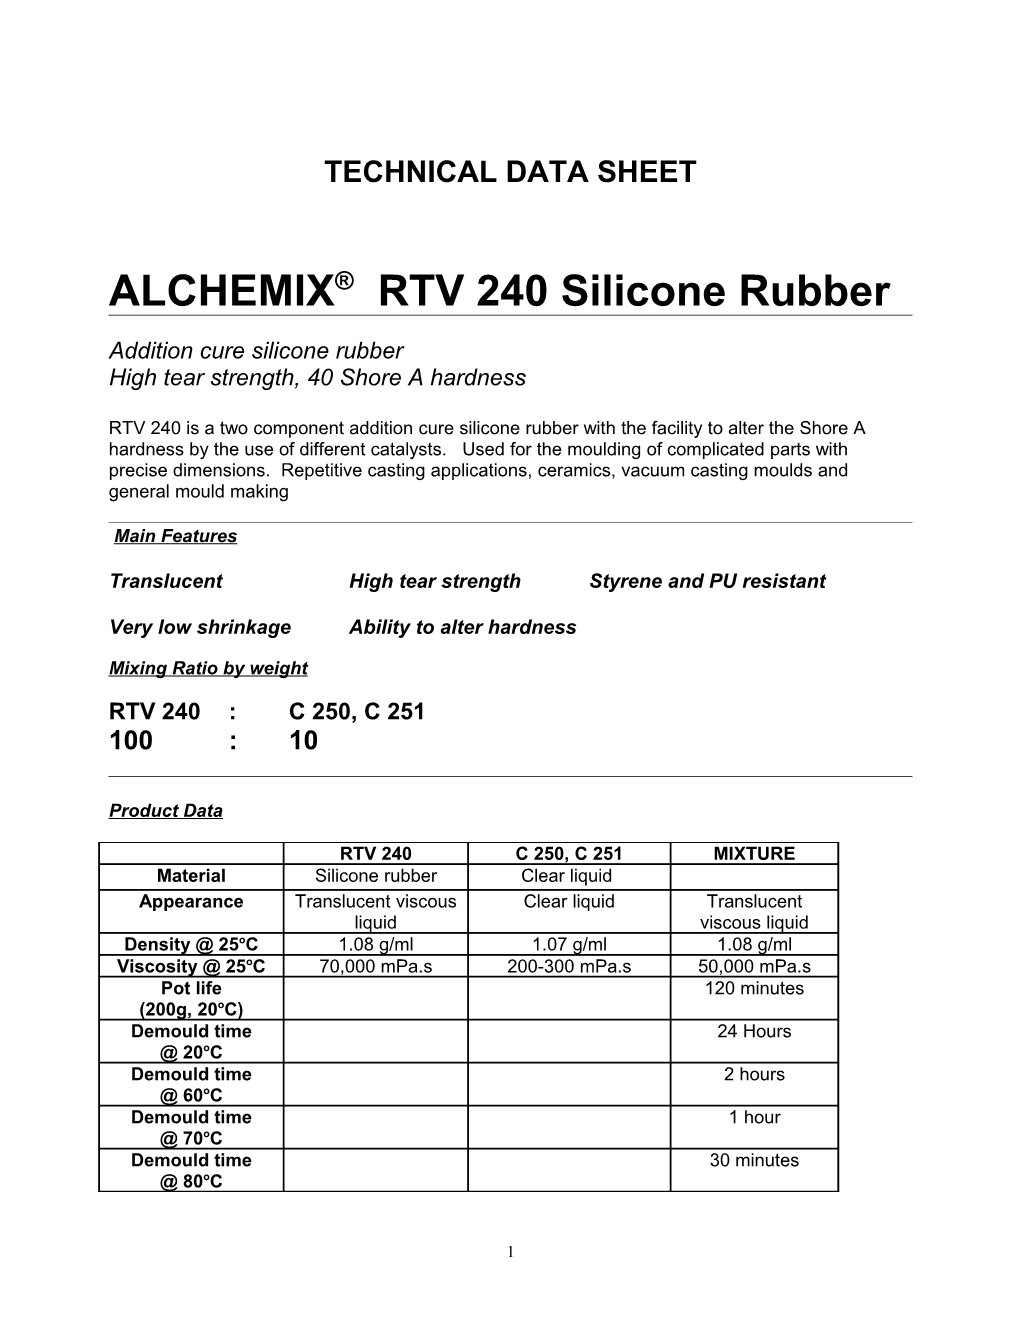 ALCHEMIX RTV 240 Silicone Rubber